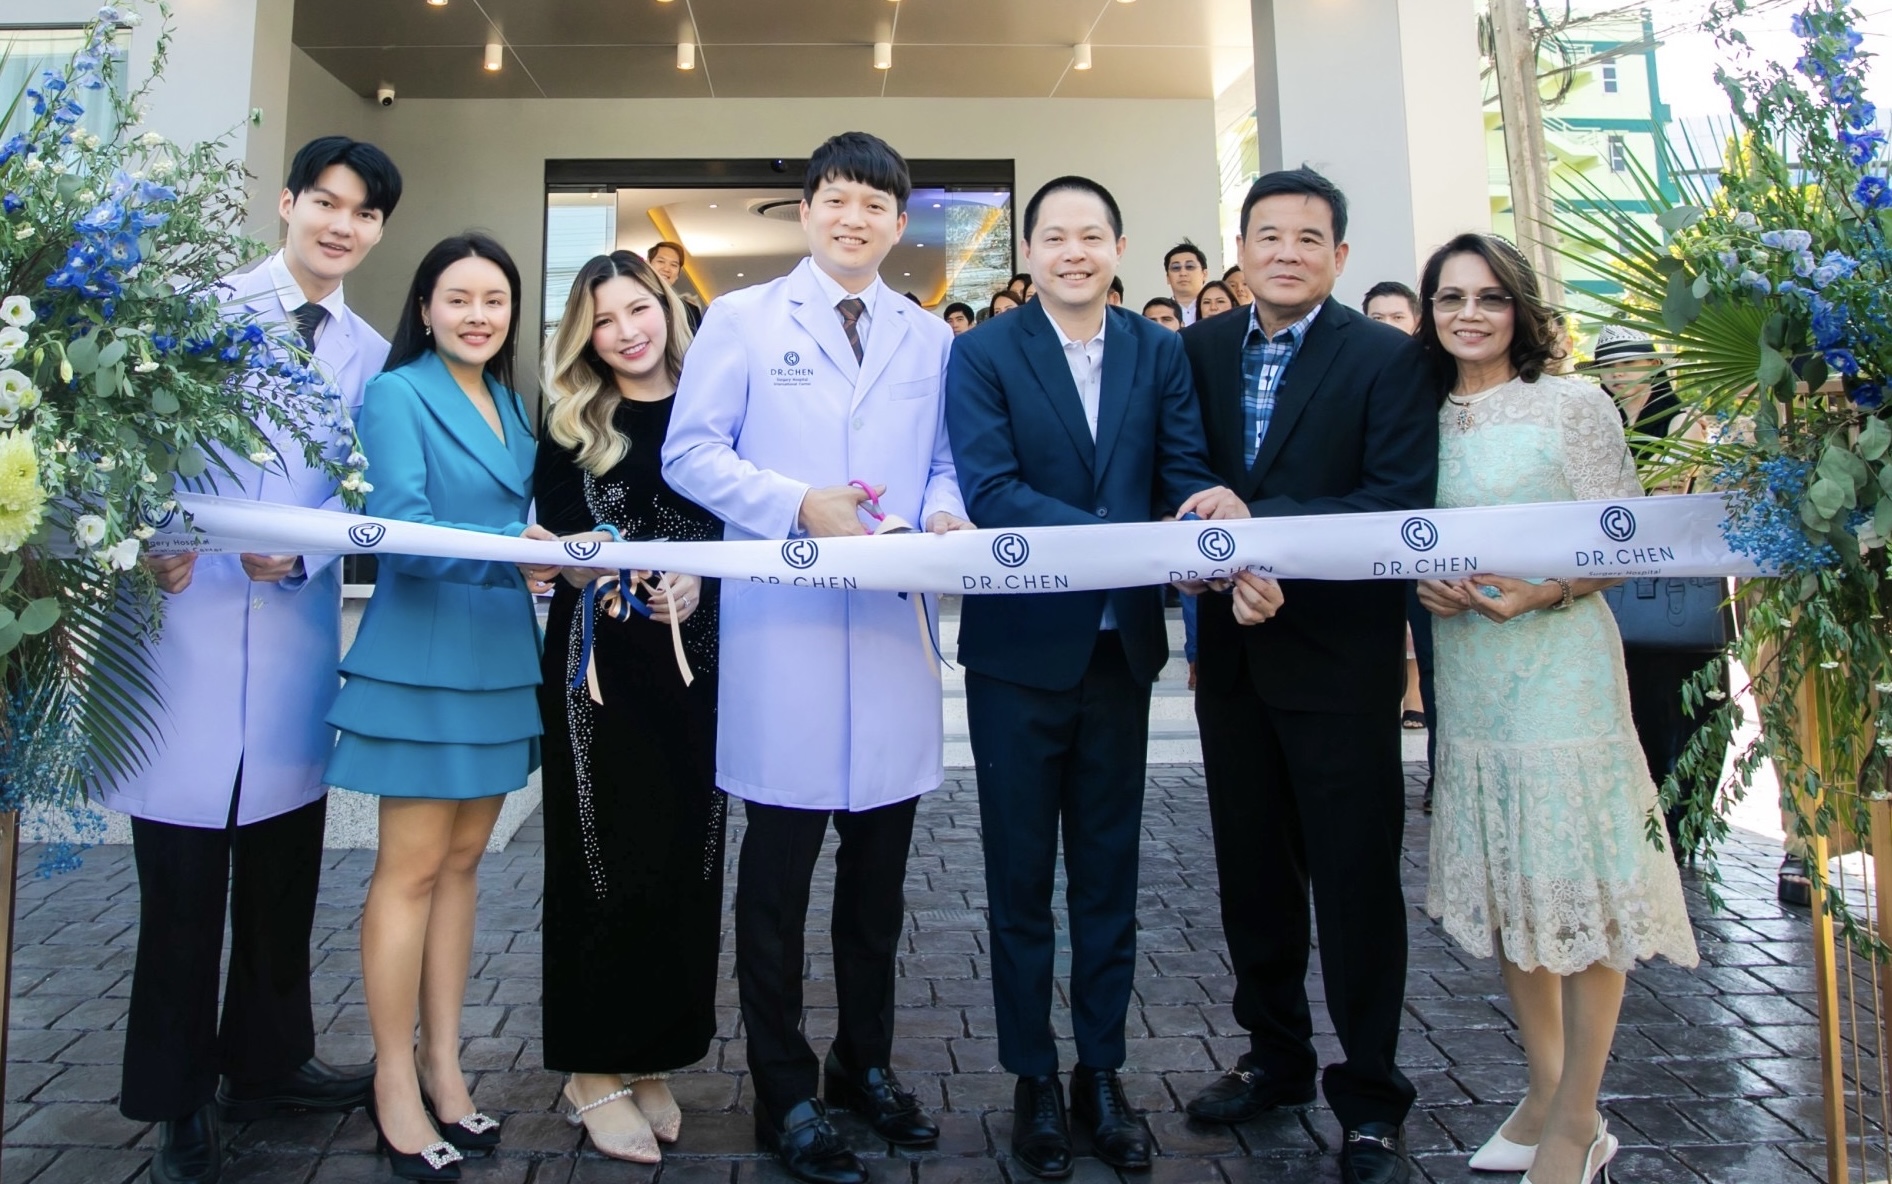 MASTER นำธง DR.CHEN ผู้นำศัลยกรรมความงามด้วยเทคนิคเฉพาะจากเกาหลีเปิดโรงพยาบาลมาตรฐานสากล  ‘Dr. Chen Surgery Hospital International Center’